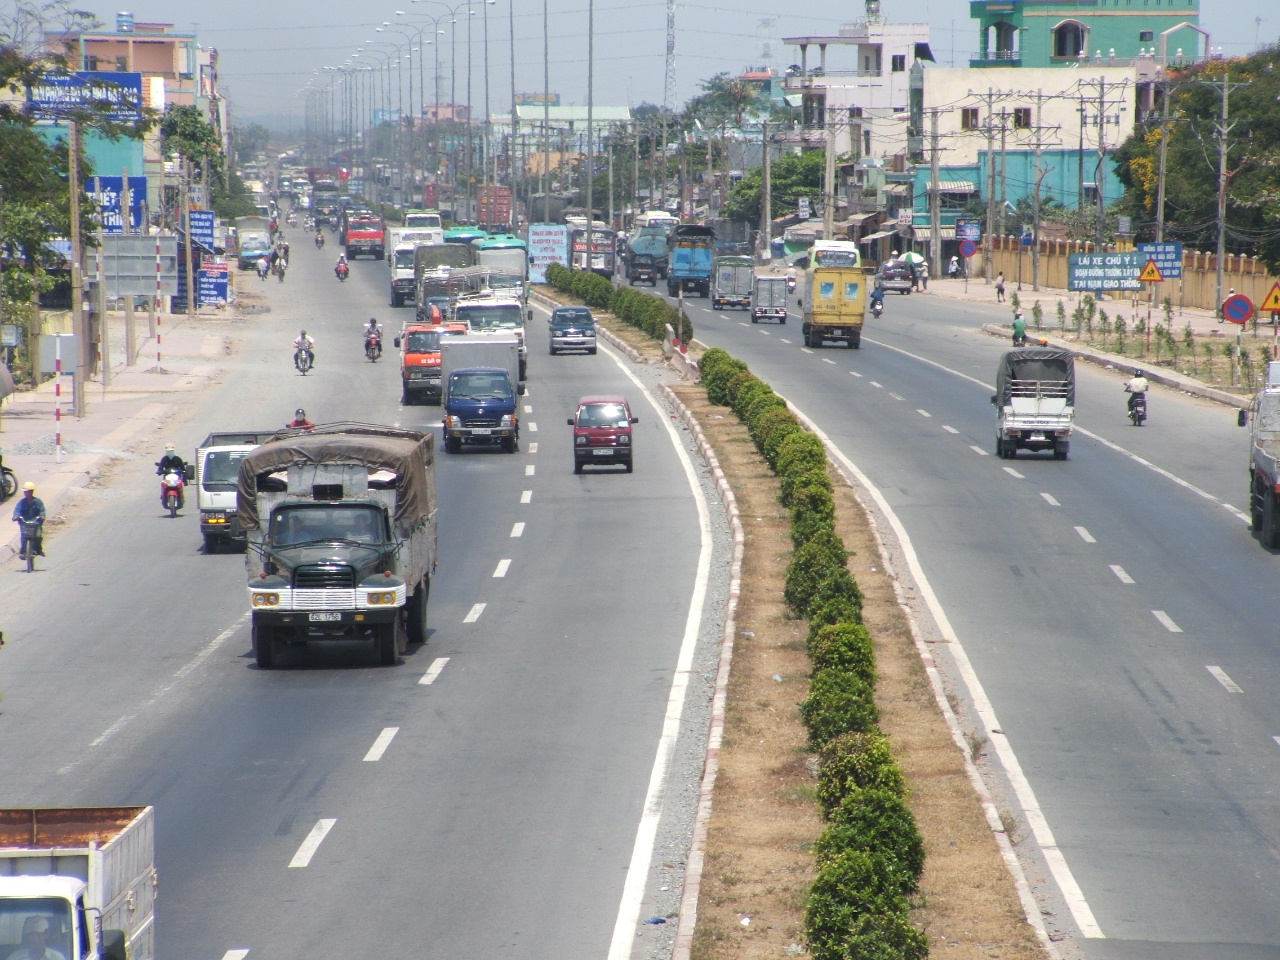 Quốc lộ 1A chạy qua địa bàn huyện Thanh Trì, Hà Nội. Ảnh minh họa